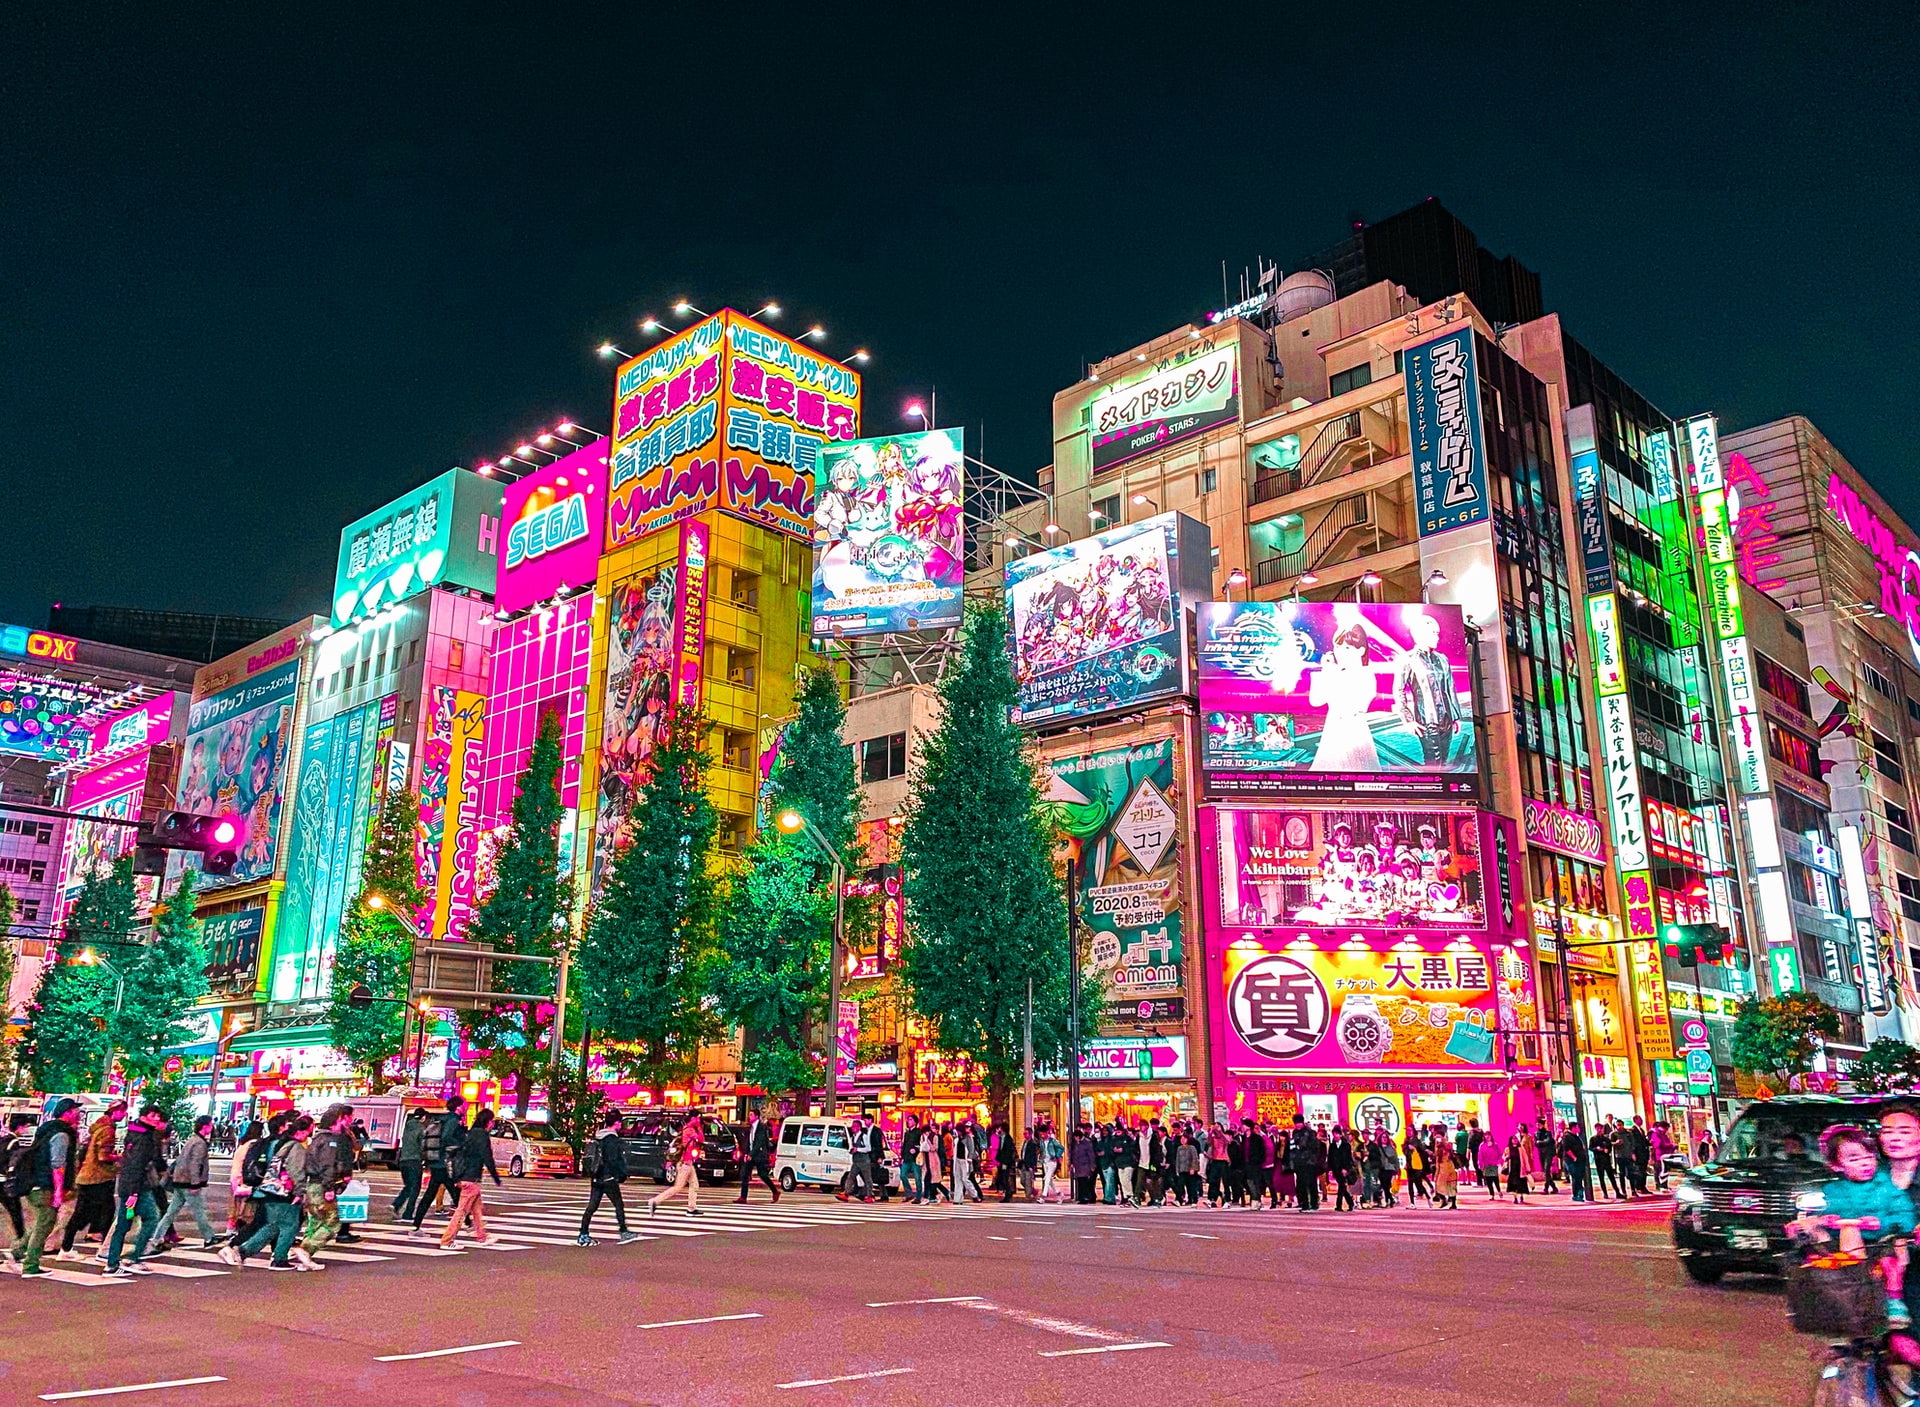 What to do in Tokio: 10 amazing activities - Travelistos